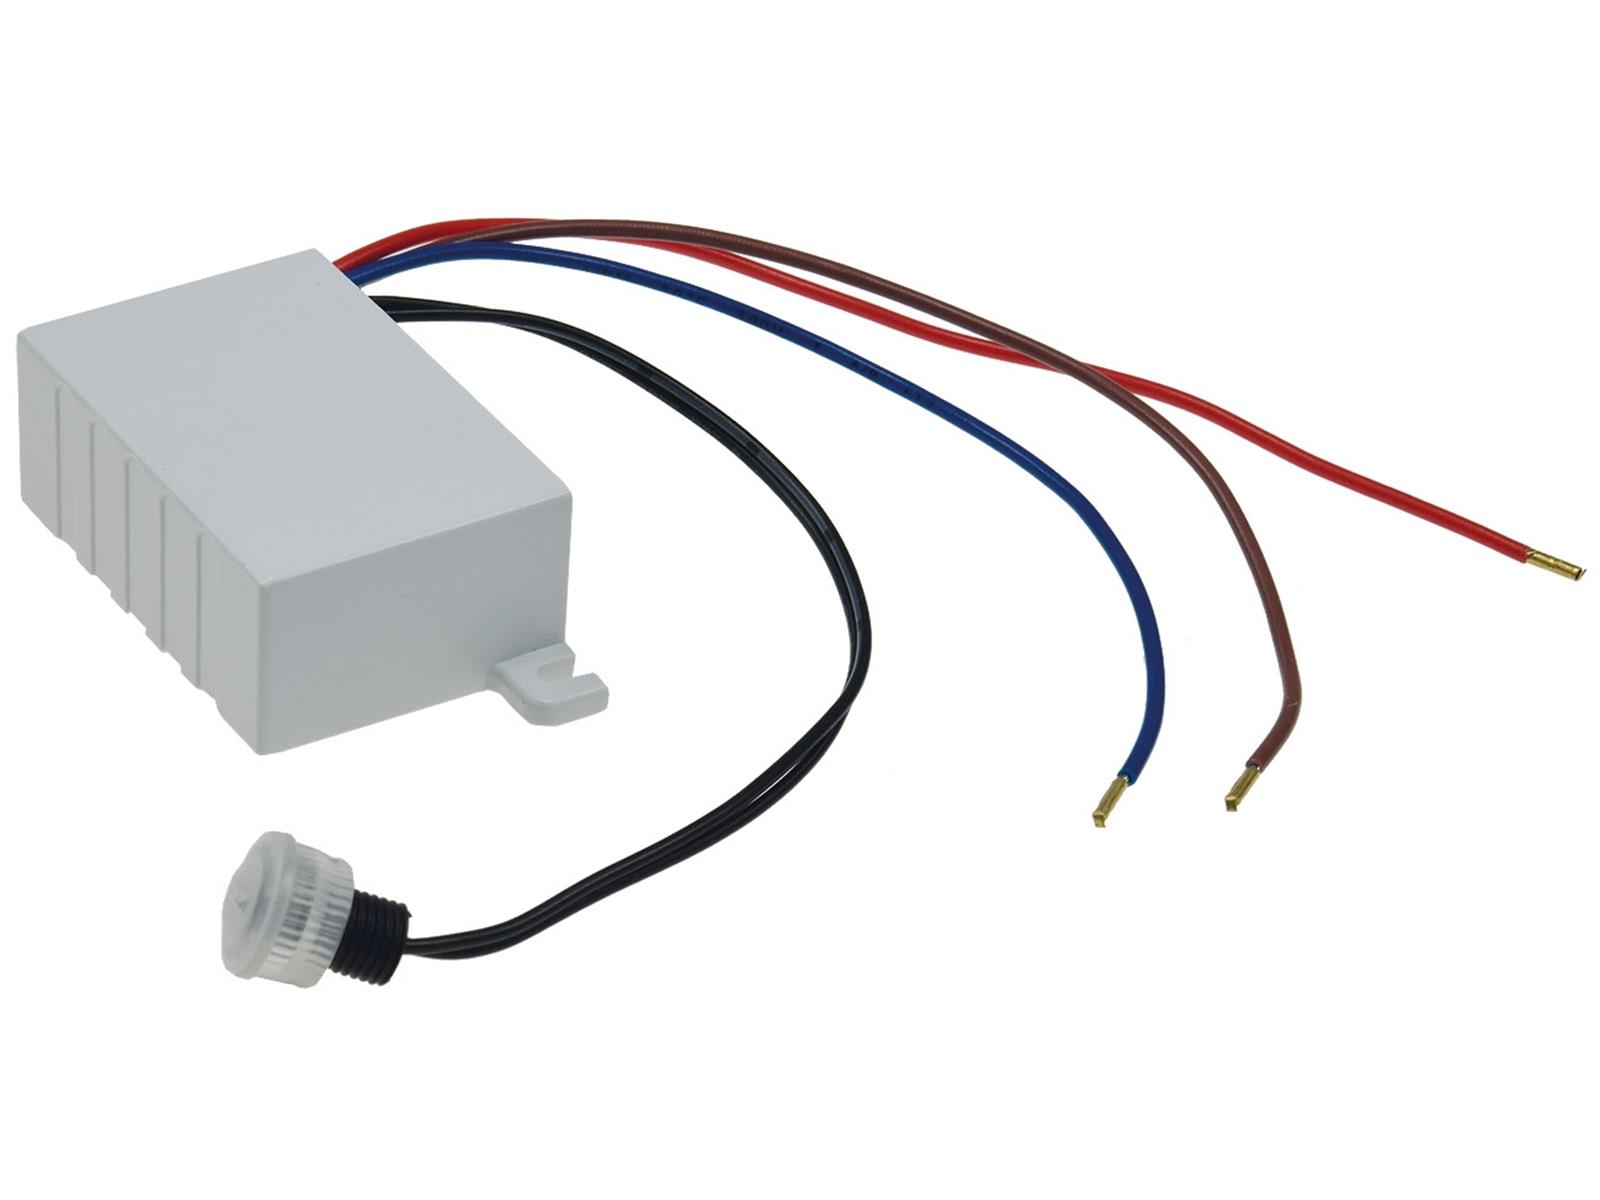 Dämmerungs-Schalter für Decken-Einbau230V/50Hz, 10A, externer Sensor, IP44